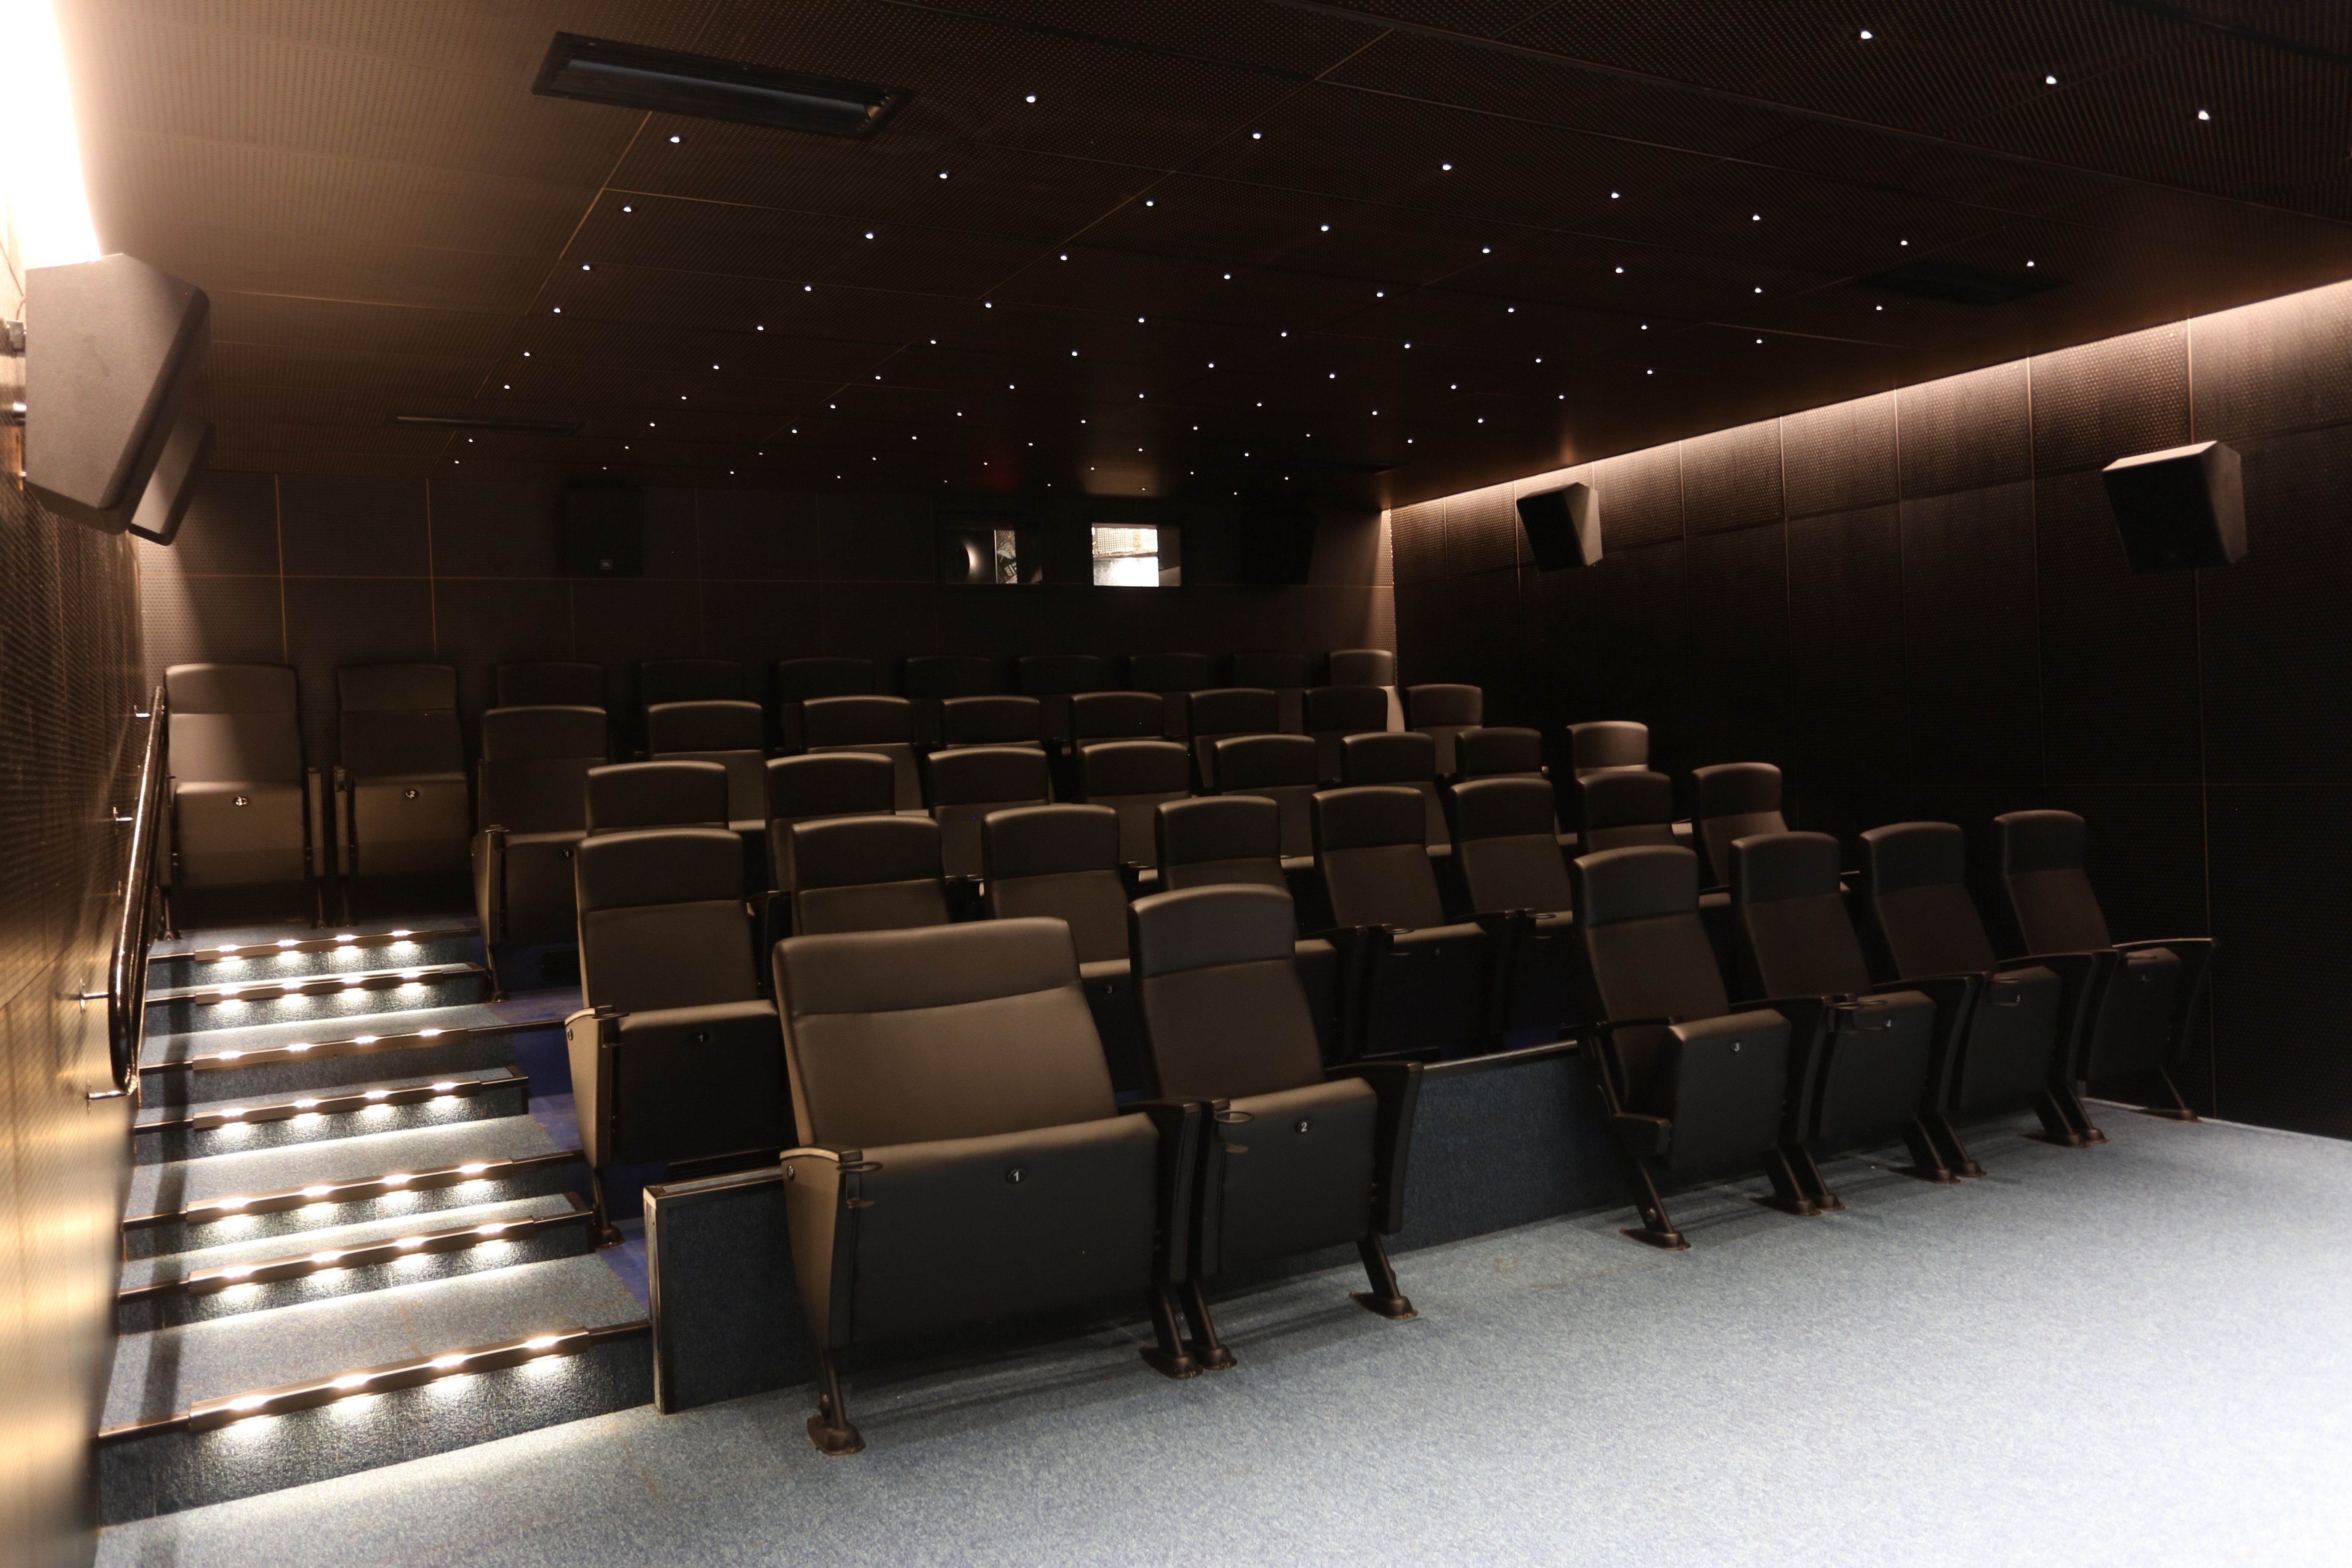 Salas de Cinema do Minas tem tecnologia de última geração. Foto: Orlando Bento